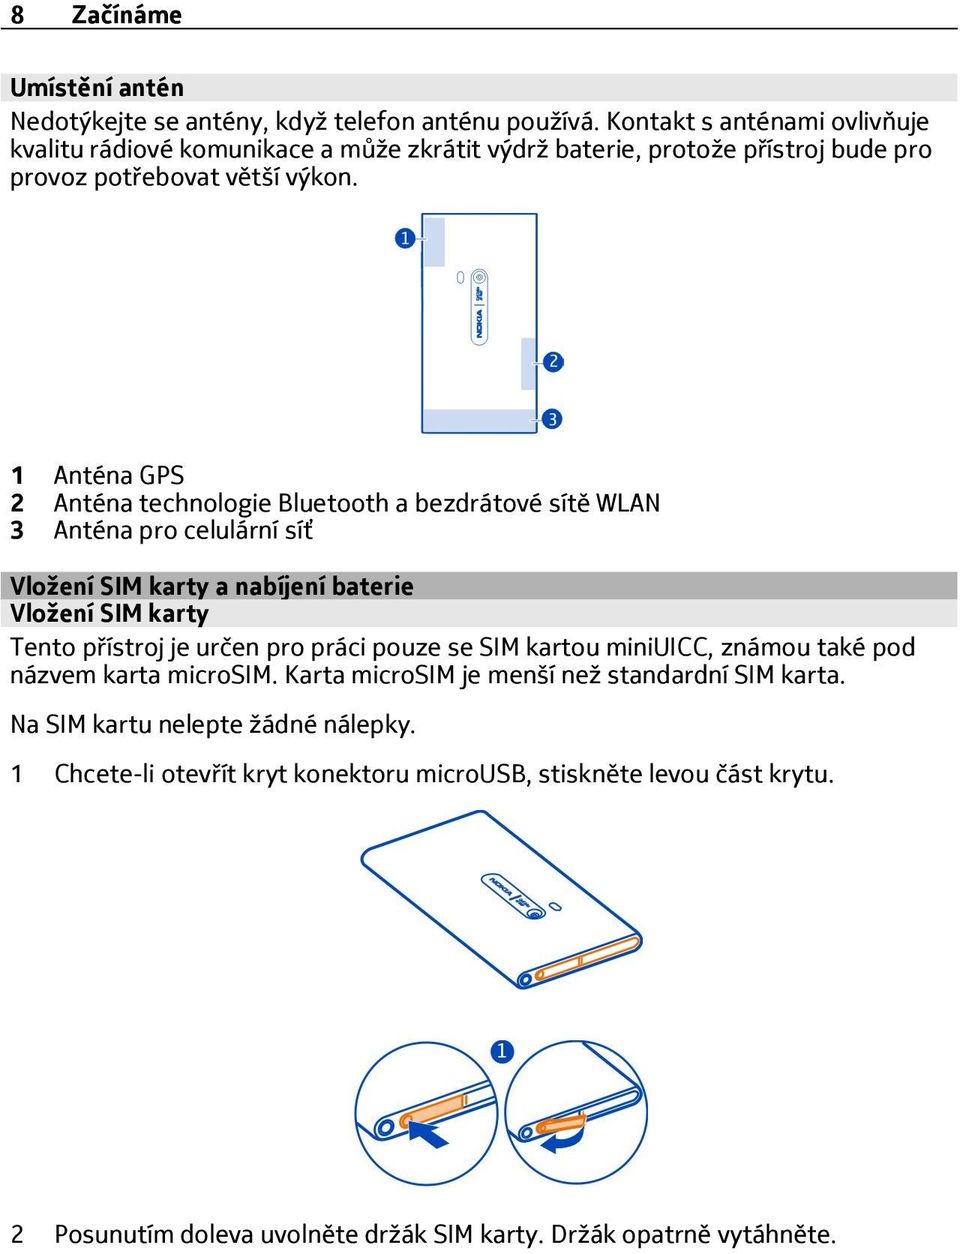 1 Anténa GPS 2 Anténa technologie Bluetooth a bezdrátové sítě WLAN 3 Anténa pro celulární síť Vložení SIM karty a nabíjení baterie Vložení SIM karty Tento přístroj je určen